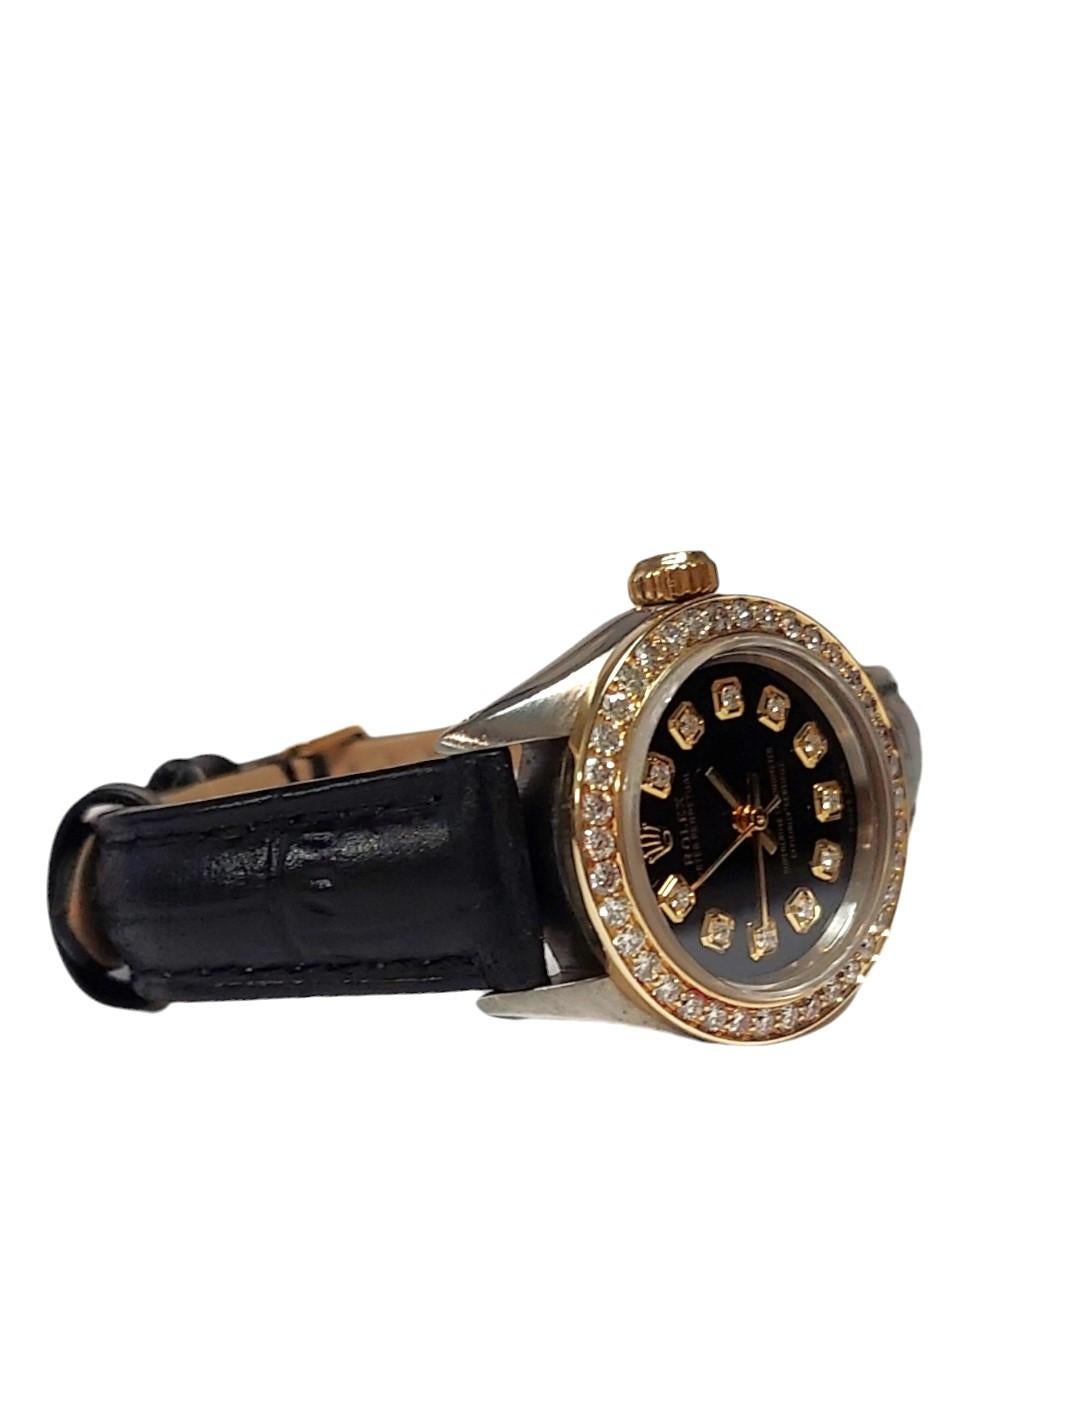 Rolex Oyster Perpetual 
Geschlecht - Damen 
Gehäusegröße - 26mm
Metalle - Stahl / Gelbgold
Modell - 6724
Lünette- benutzerdefinierte Gelbgold 1.0CT Diamant 
Zifferblatt - benutzerdefinierte Schwarzer Diamant 
Uhrwerk - Automatik-Kaliber